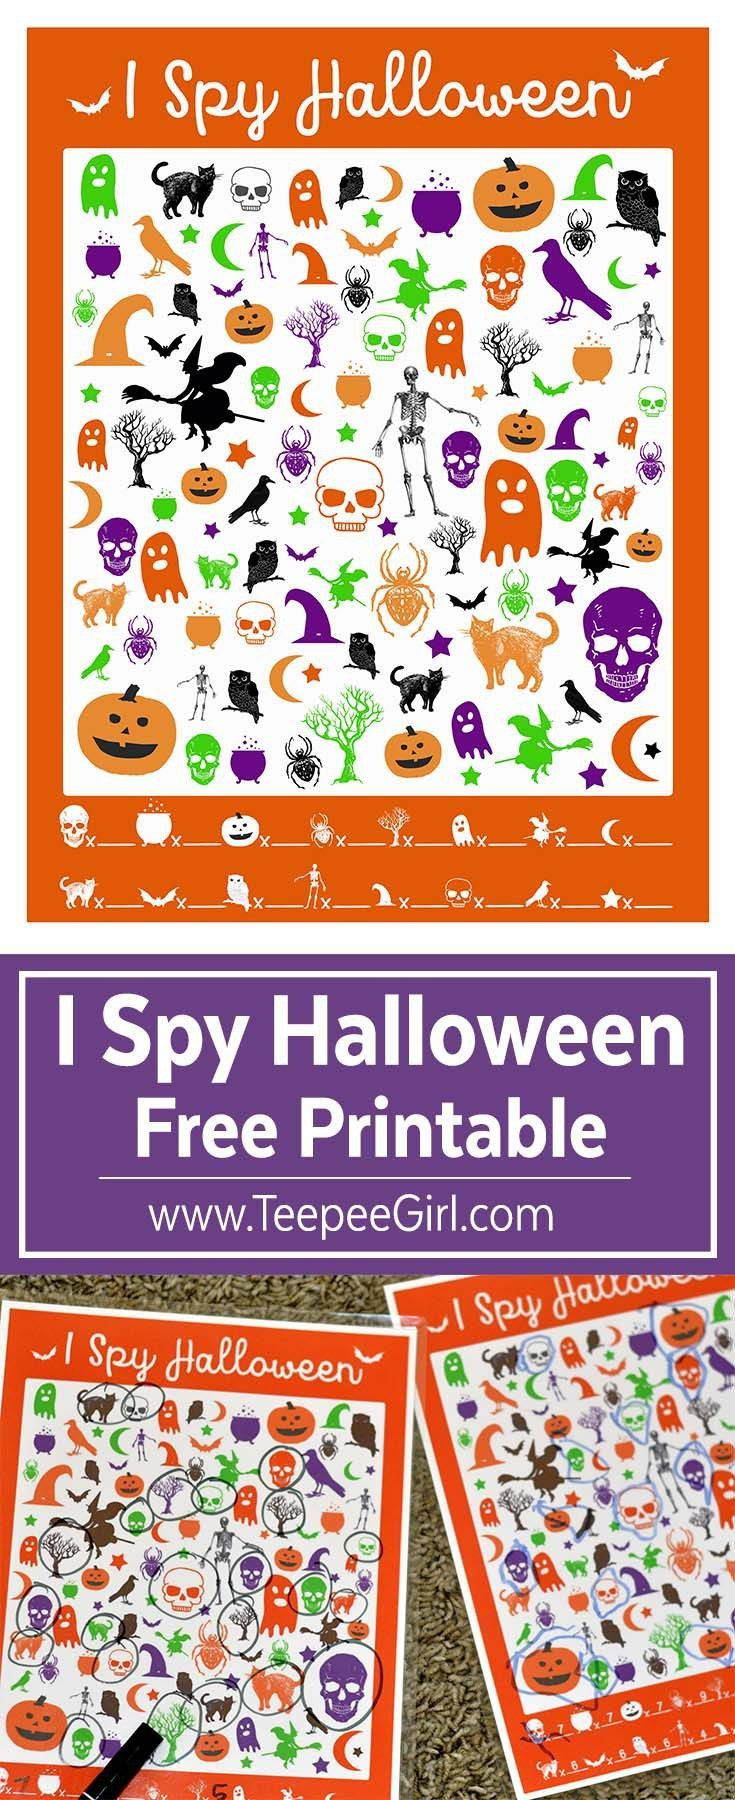 Free Halloween Party Game Ideas
 Free I Spy Halloween Printable Game